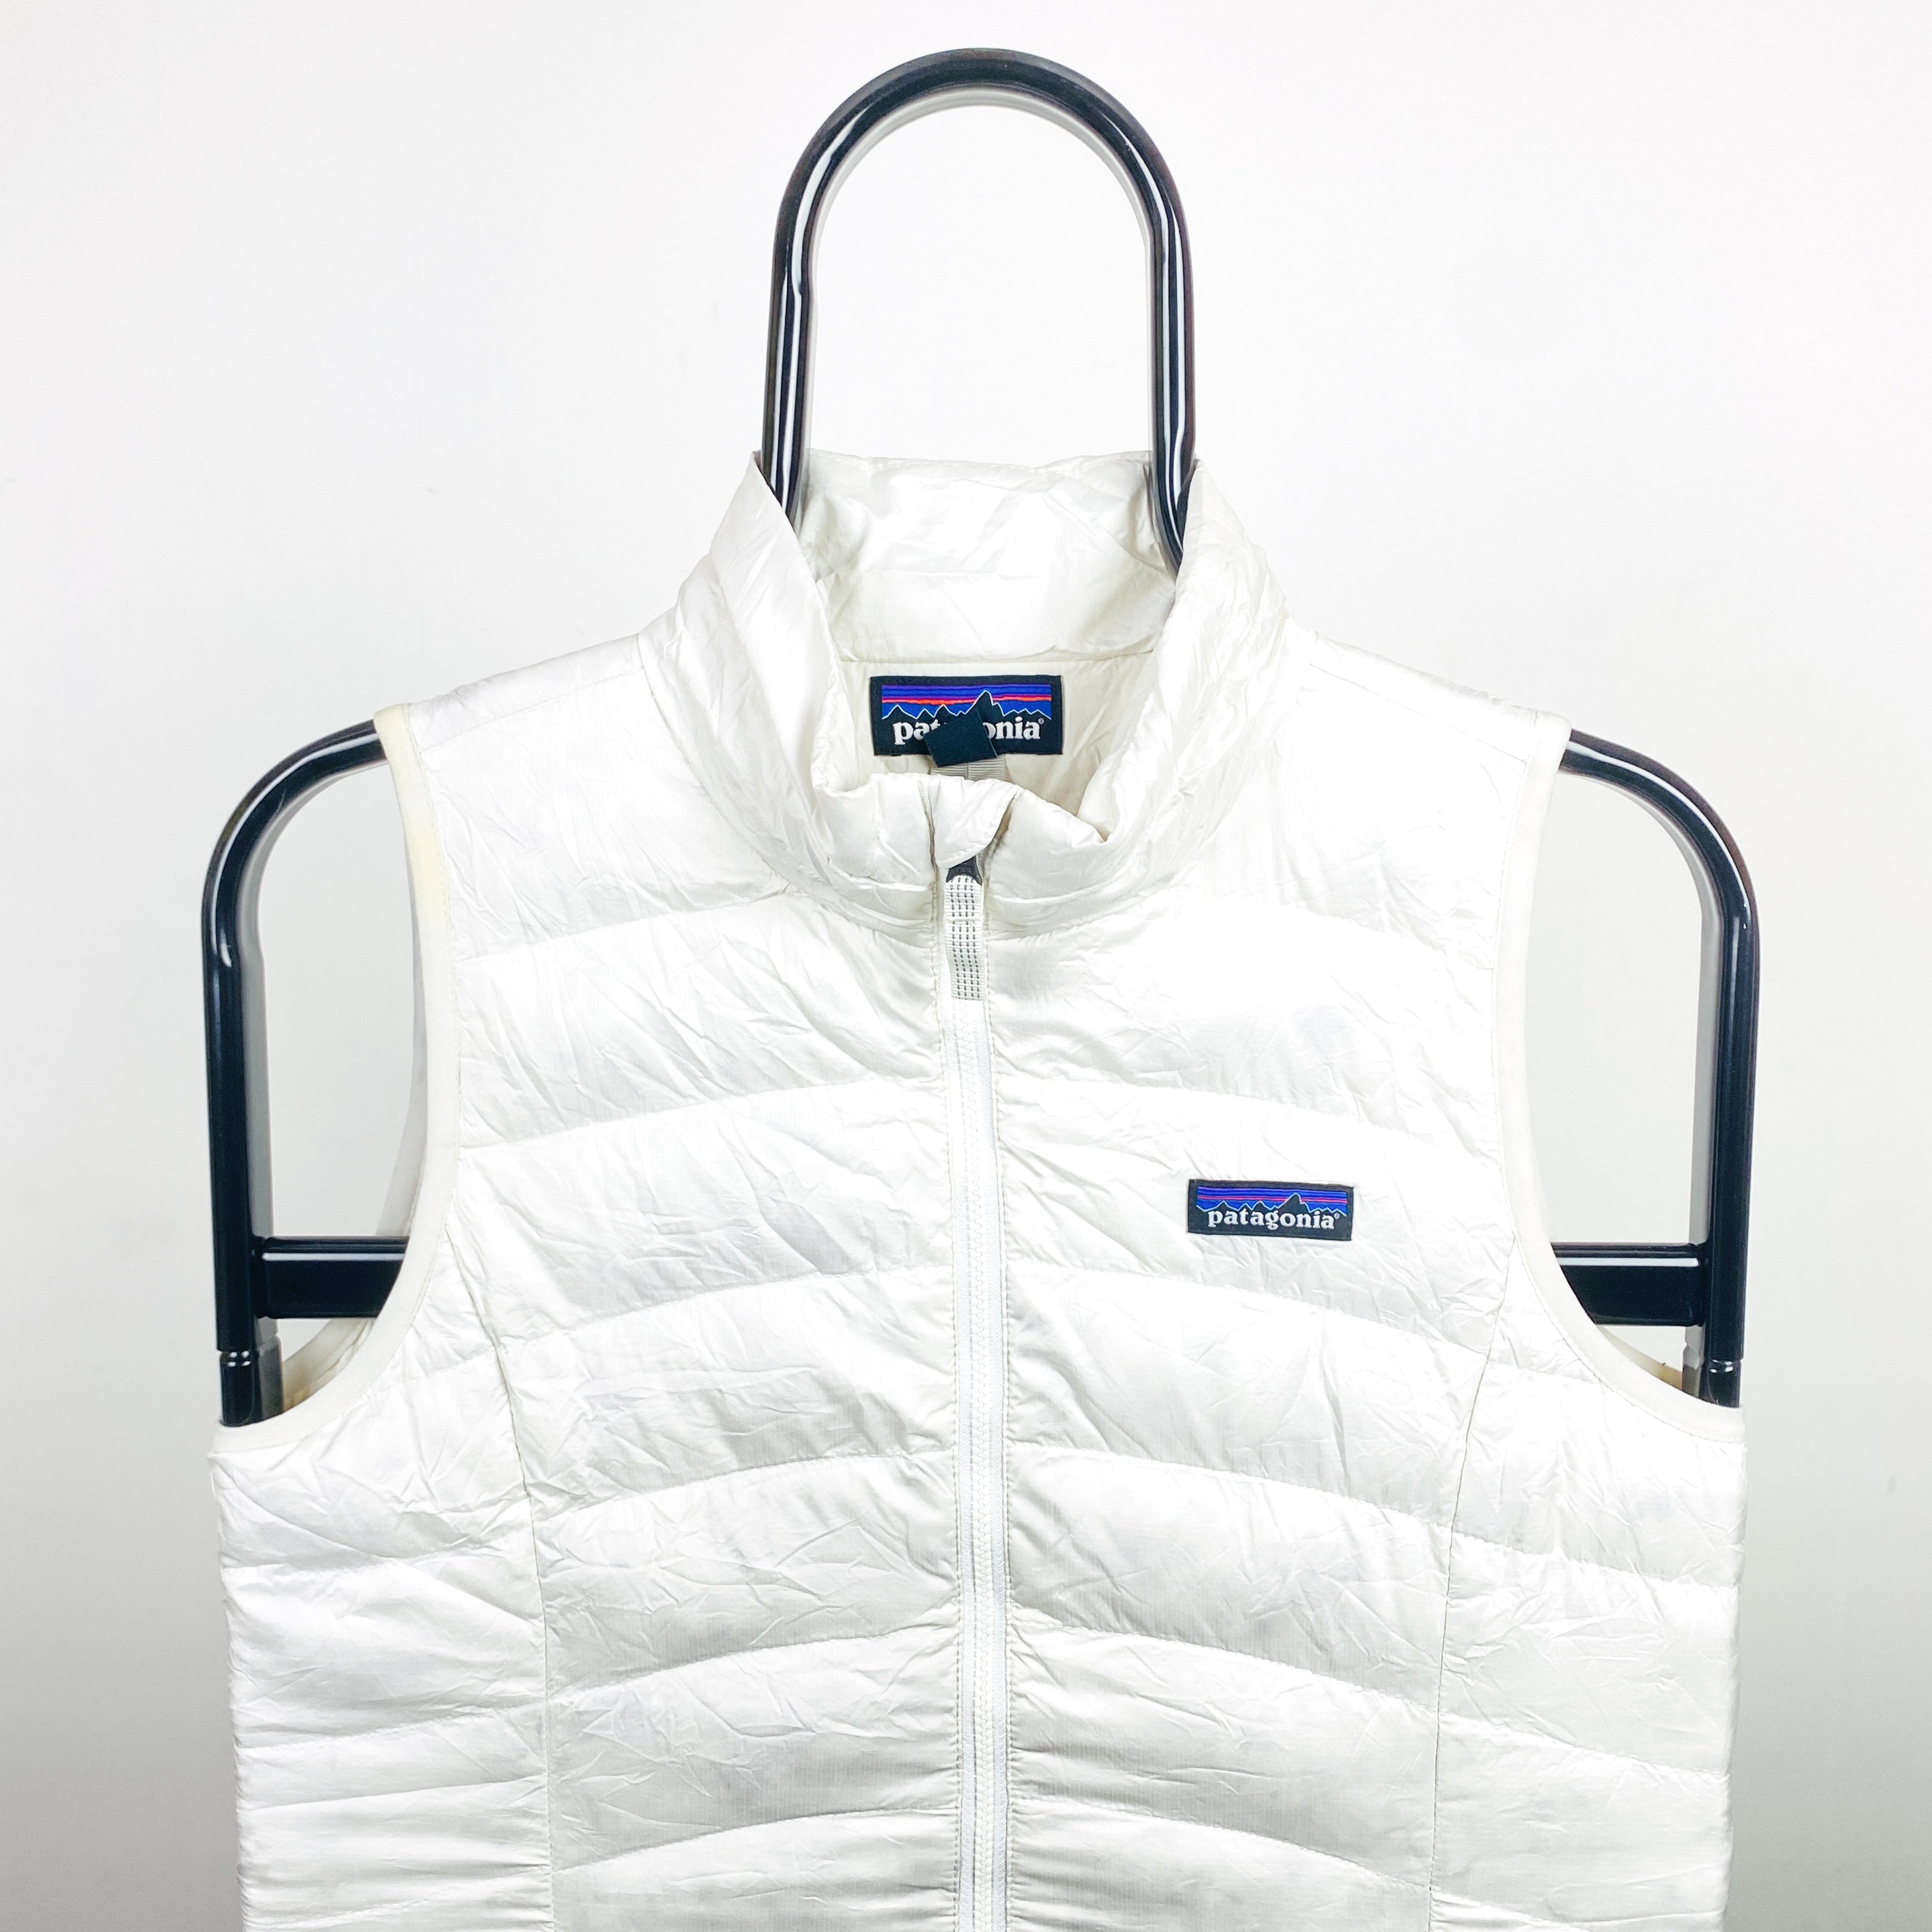 Retro Patagonia Puffer Gilet Jacket Coat White Small